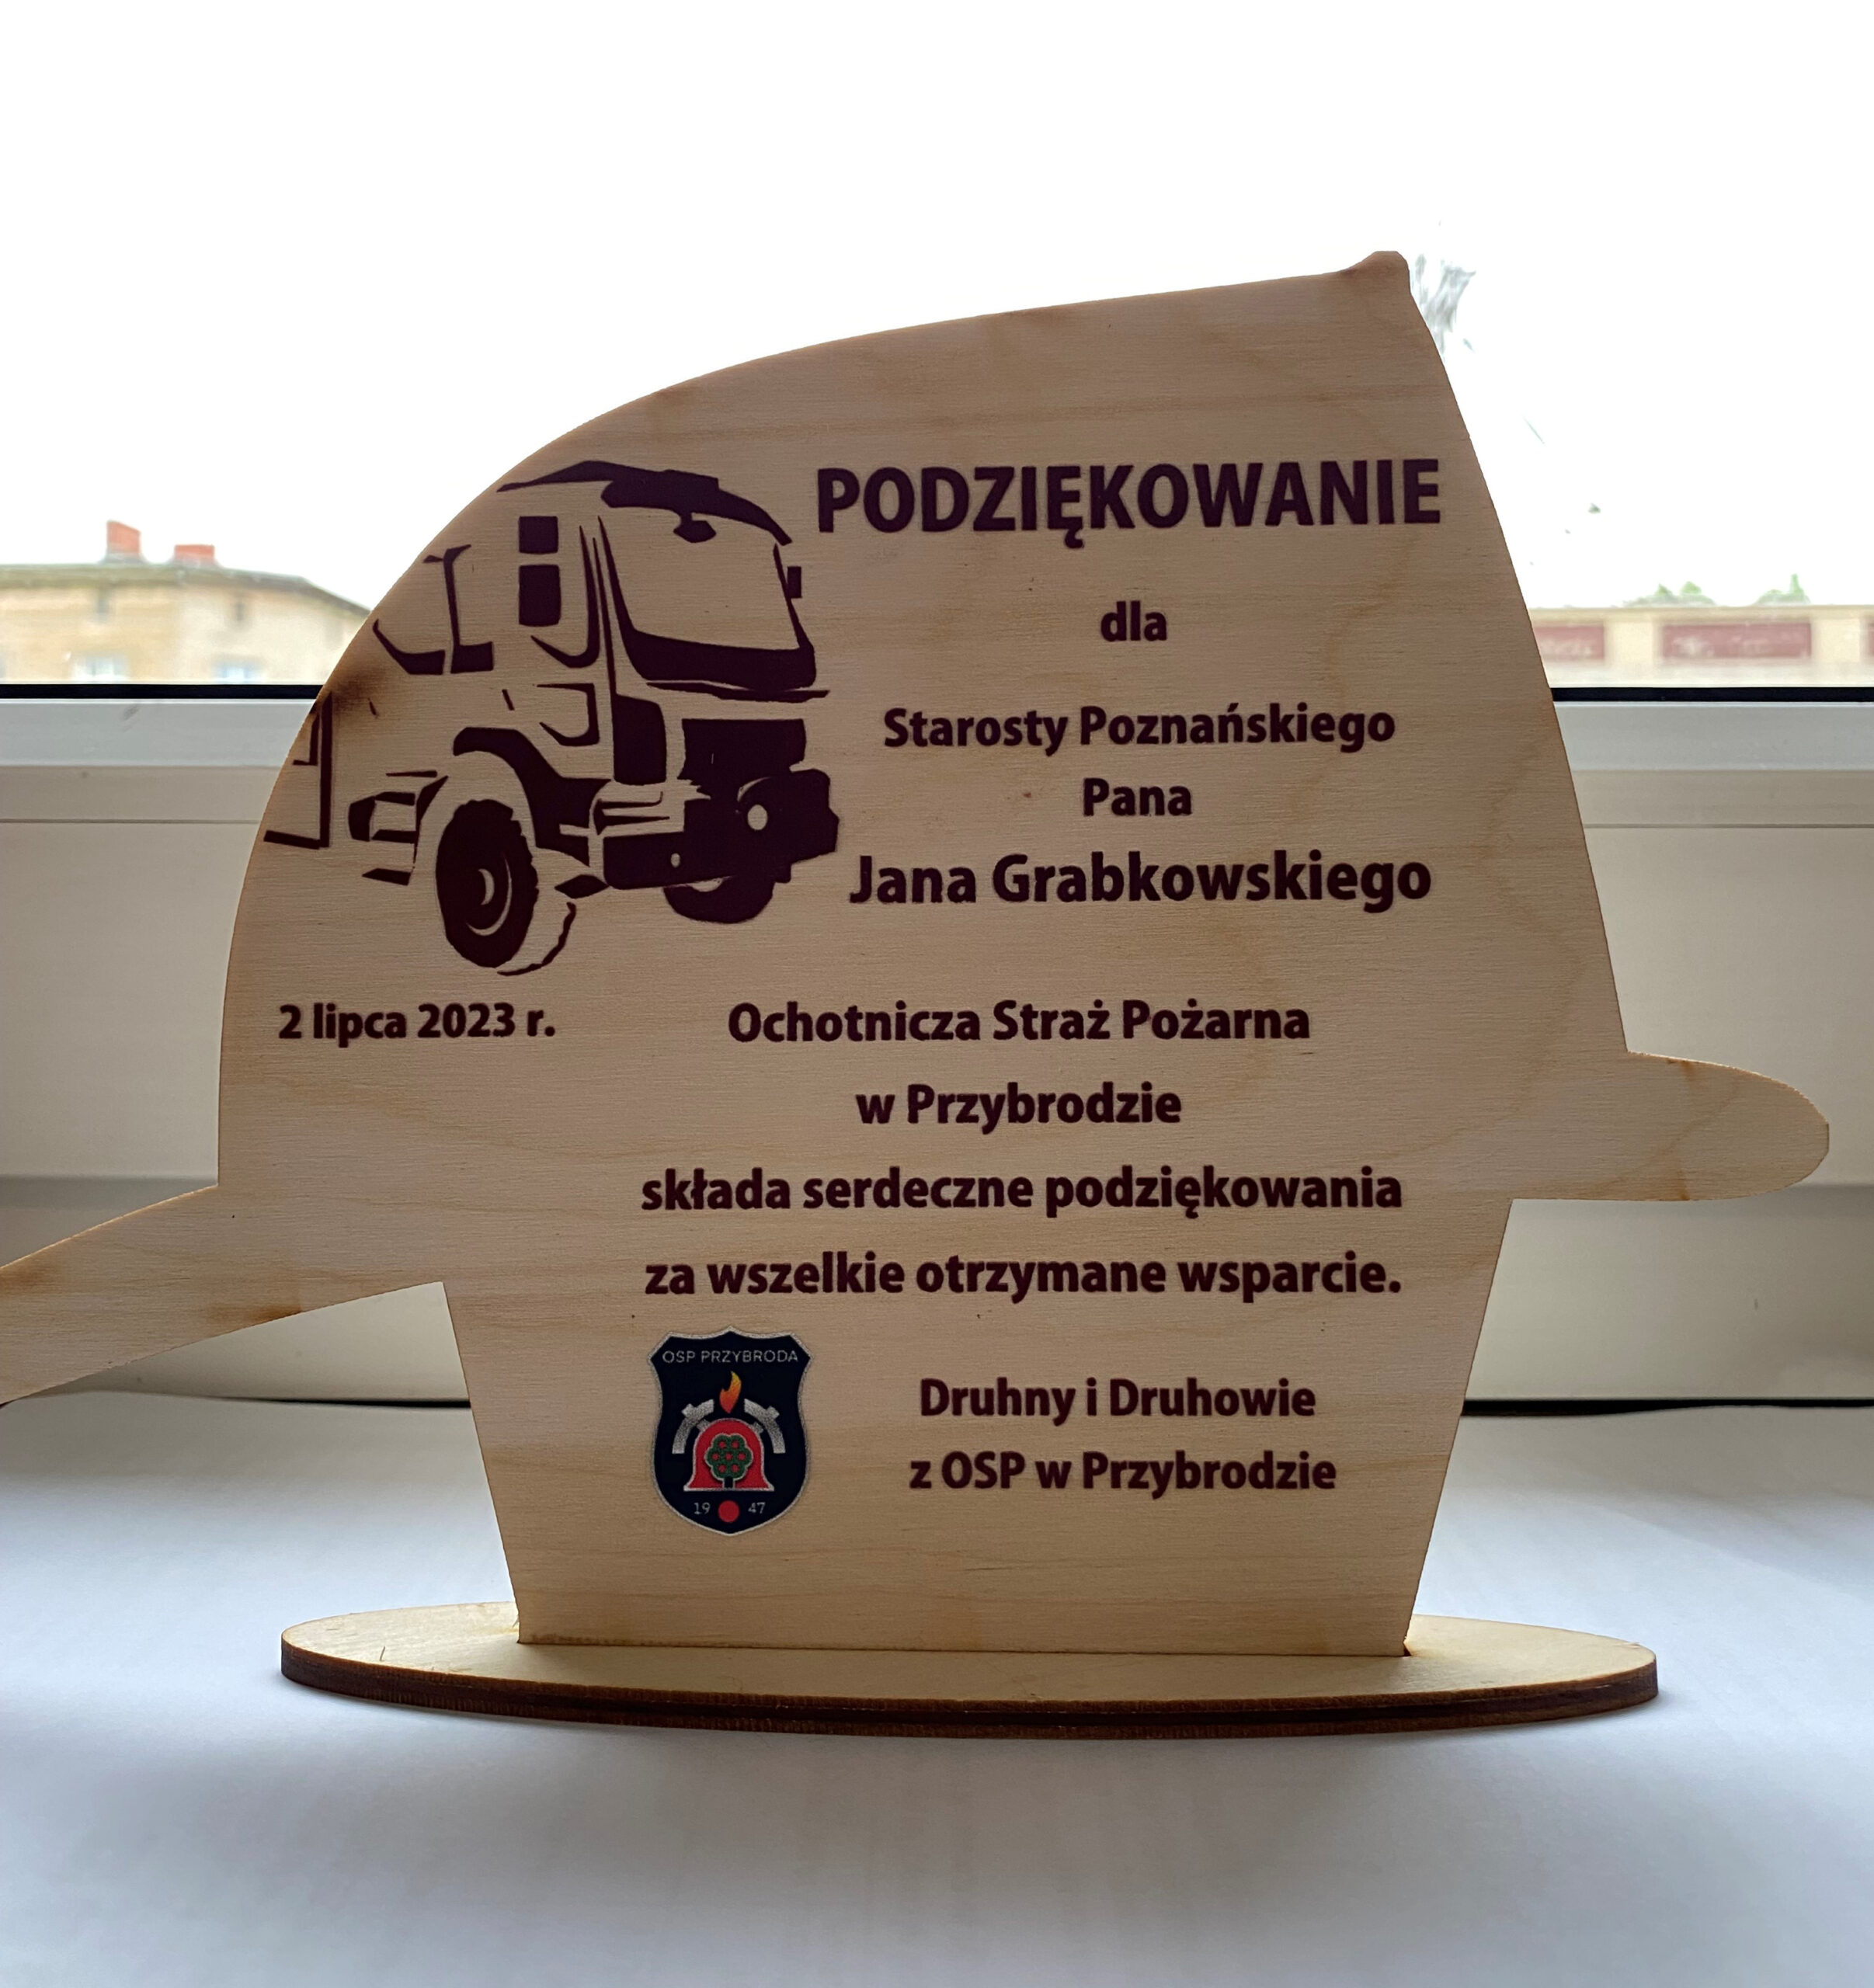 Podziękowanie dla starosty poznańskiego od OSP w Przybrodzie